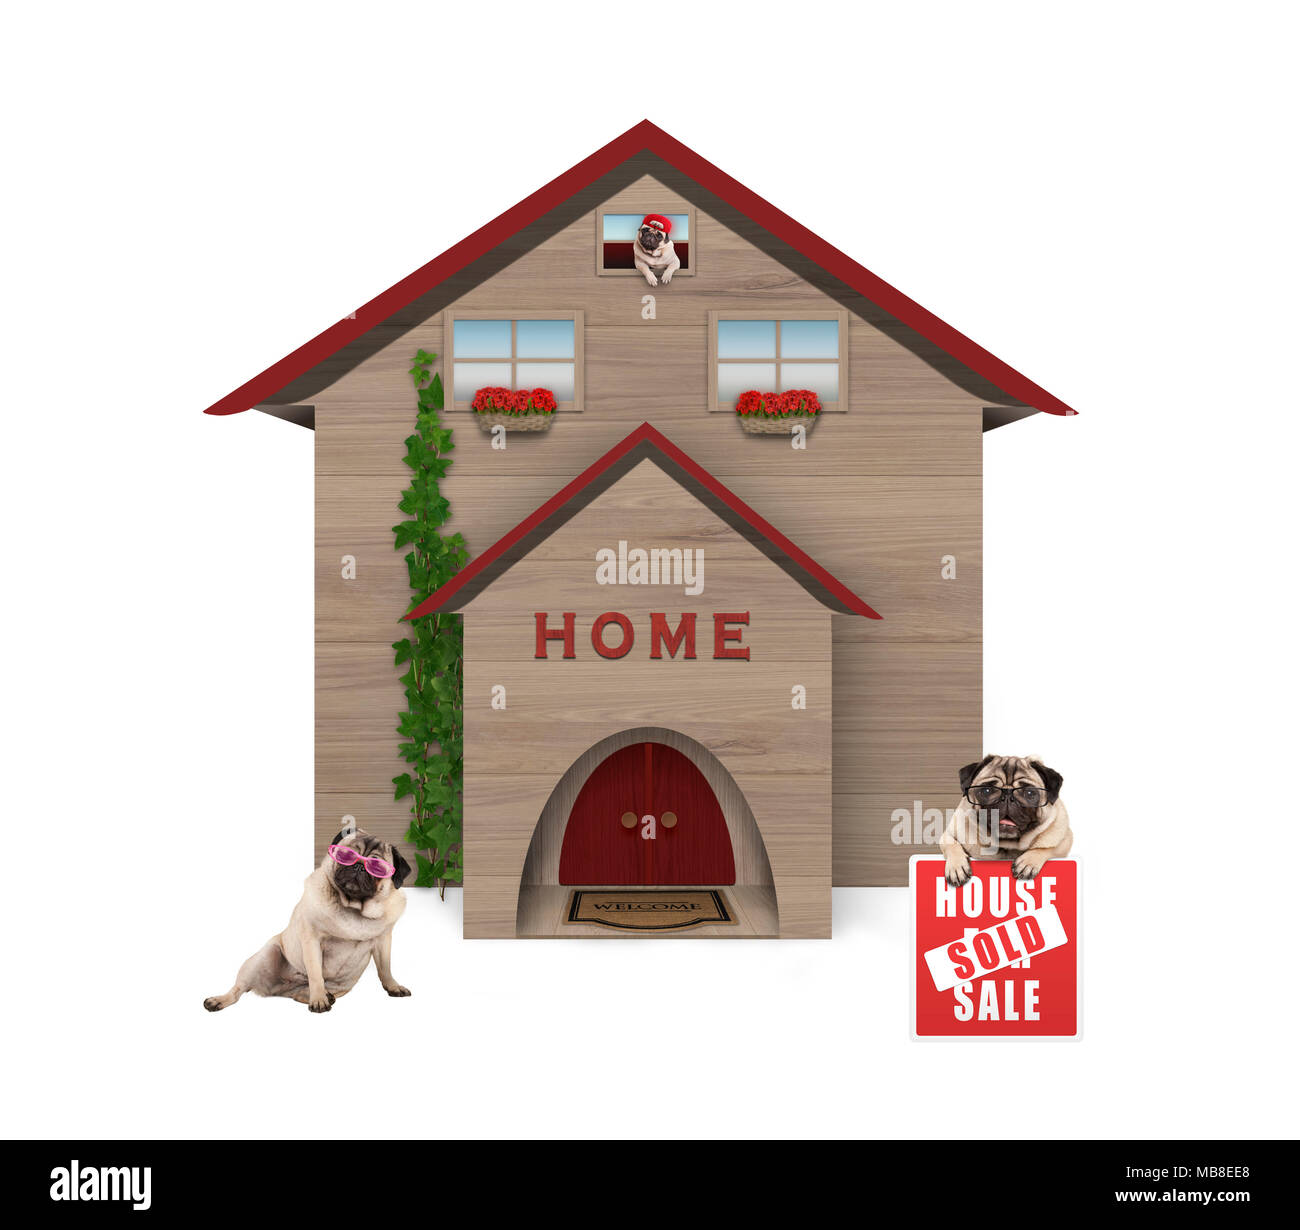 La classe moyenne moyenne famille chien pug, assis dans jardin avec maison vendue signe à nouveau la maison, isolé sur fond blanc Banque D'Images